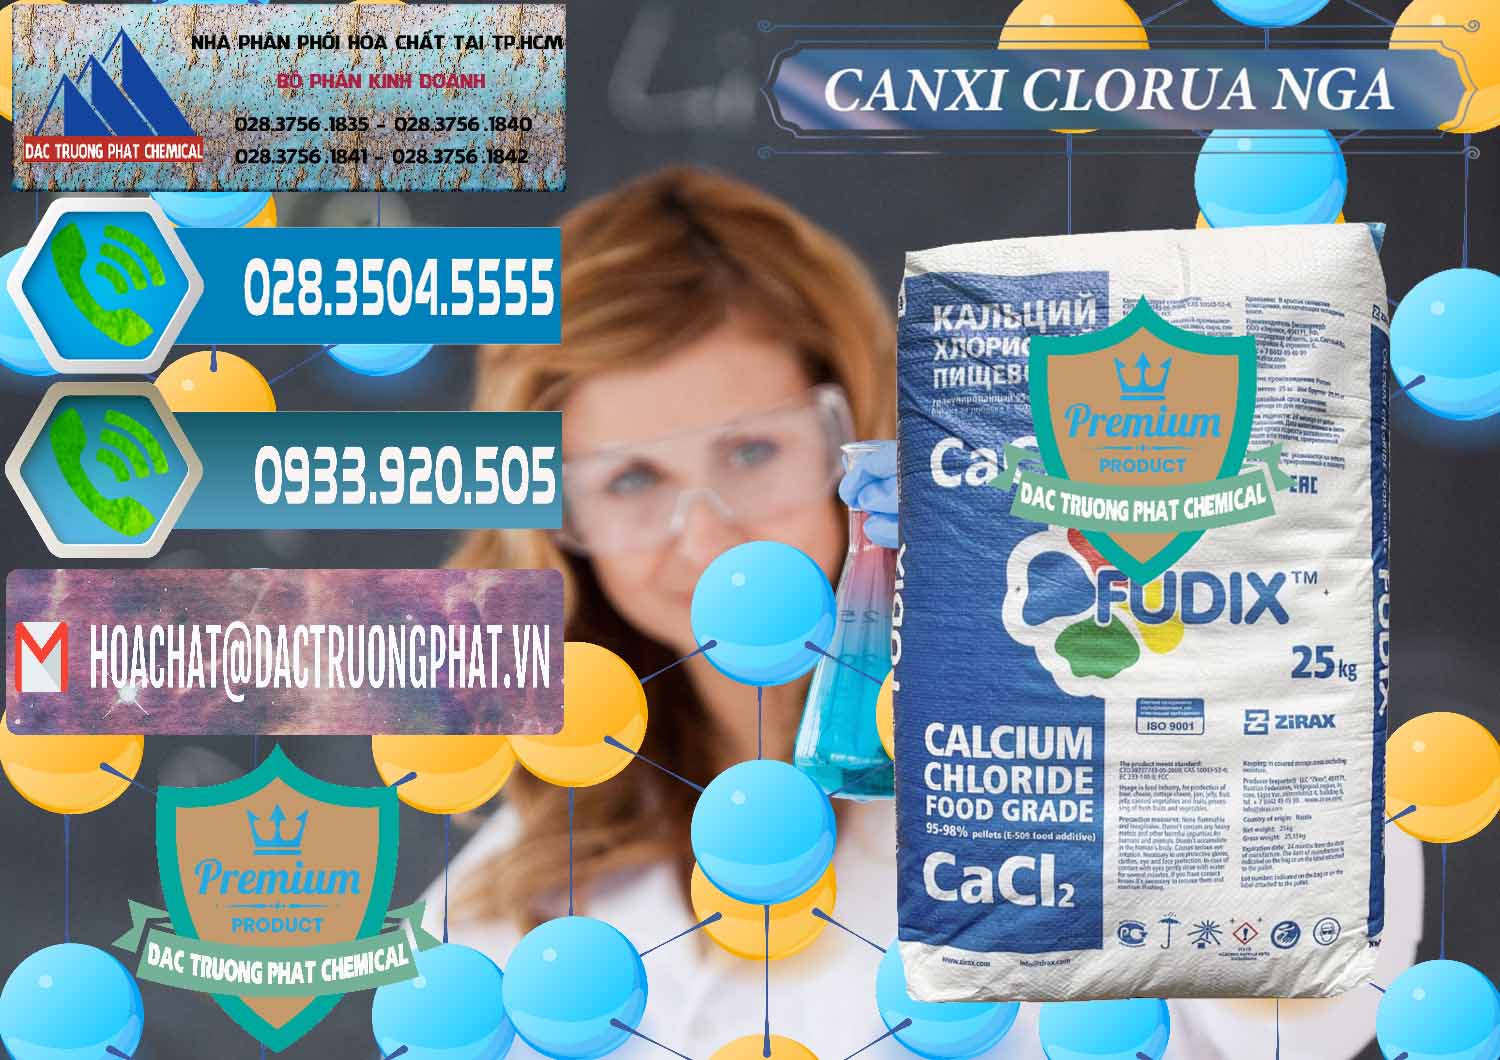 Nơi phân phối & bán CaCl2 – Canxi Clorua Nga Russia - 0430 - Nơi chuyên cung ứng _ phân phối hóa chất tại TP.HCM - congtyhoachat.net